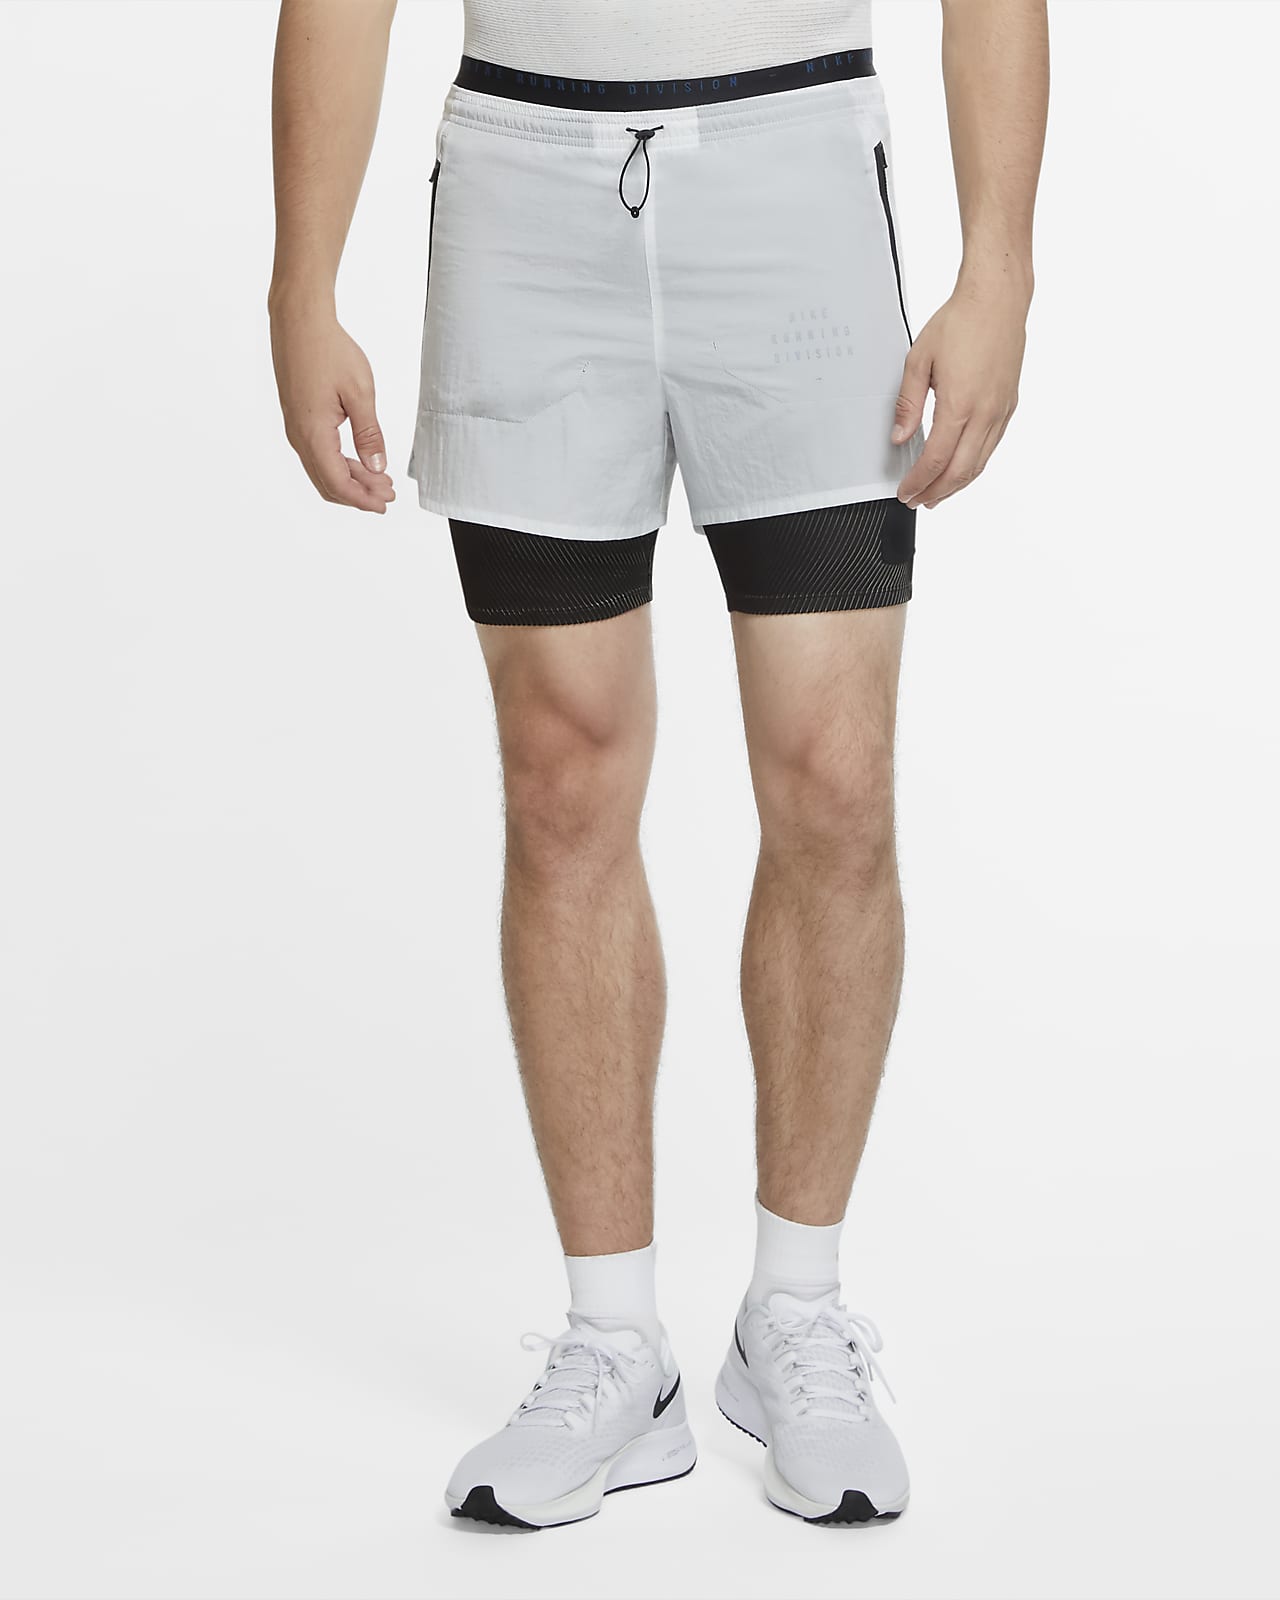 nike gray running shorts